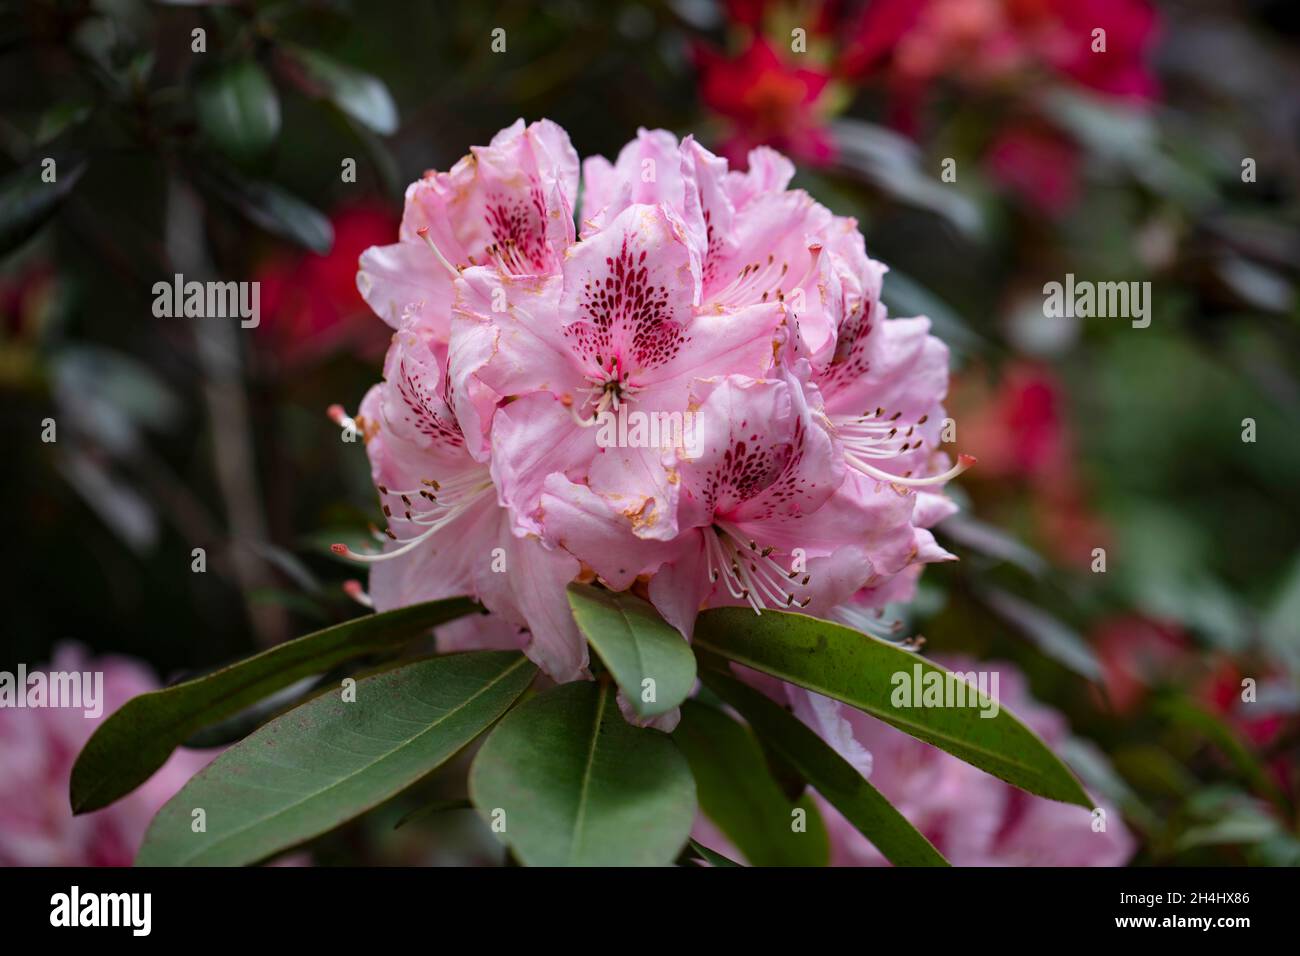 Rhododendron 'Diadem', rosa blühend mit roten Punkten, in einem Garten in NRW, Deutschland. Stock Photo